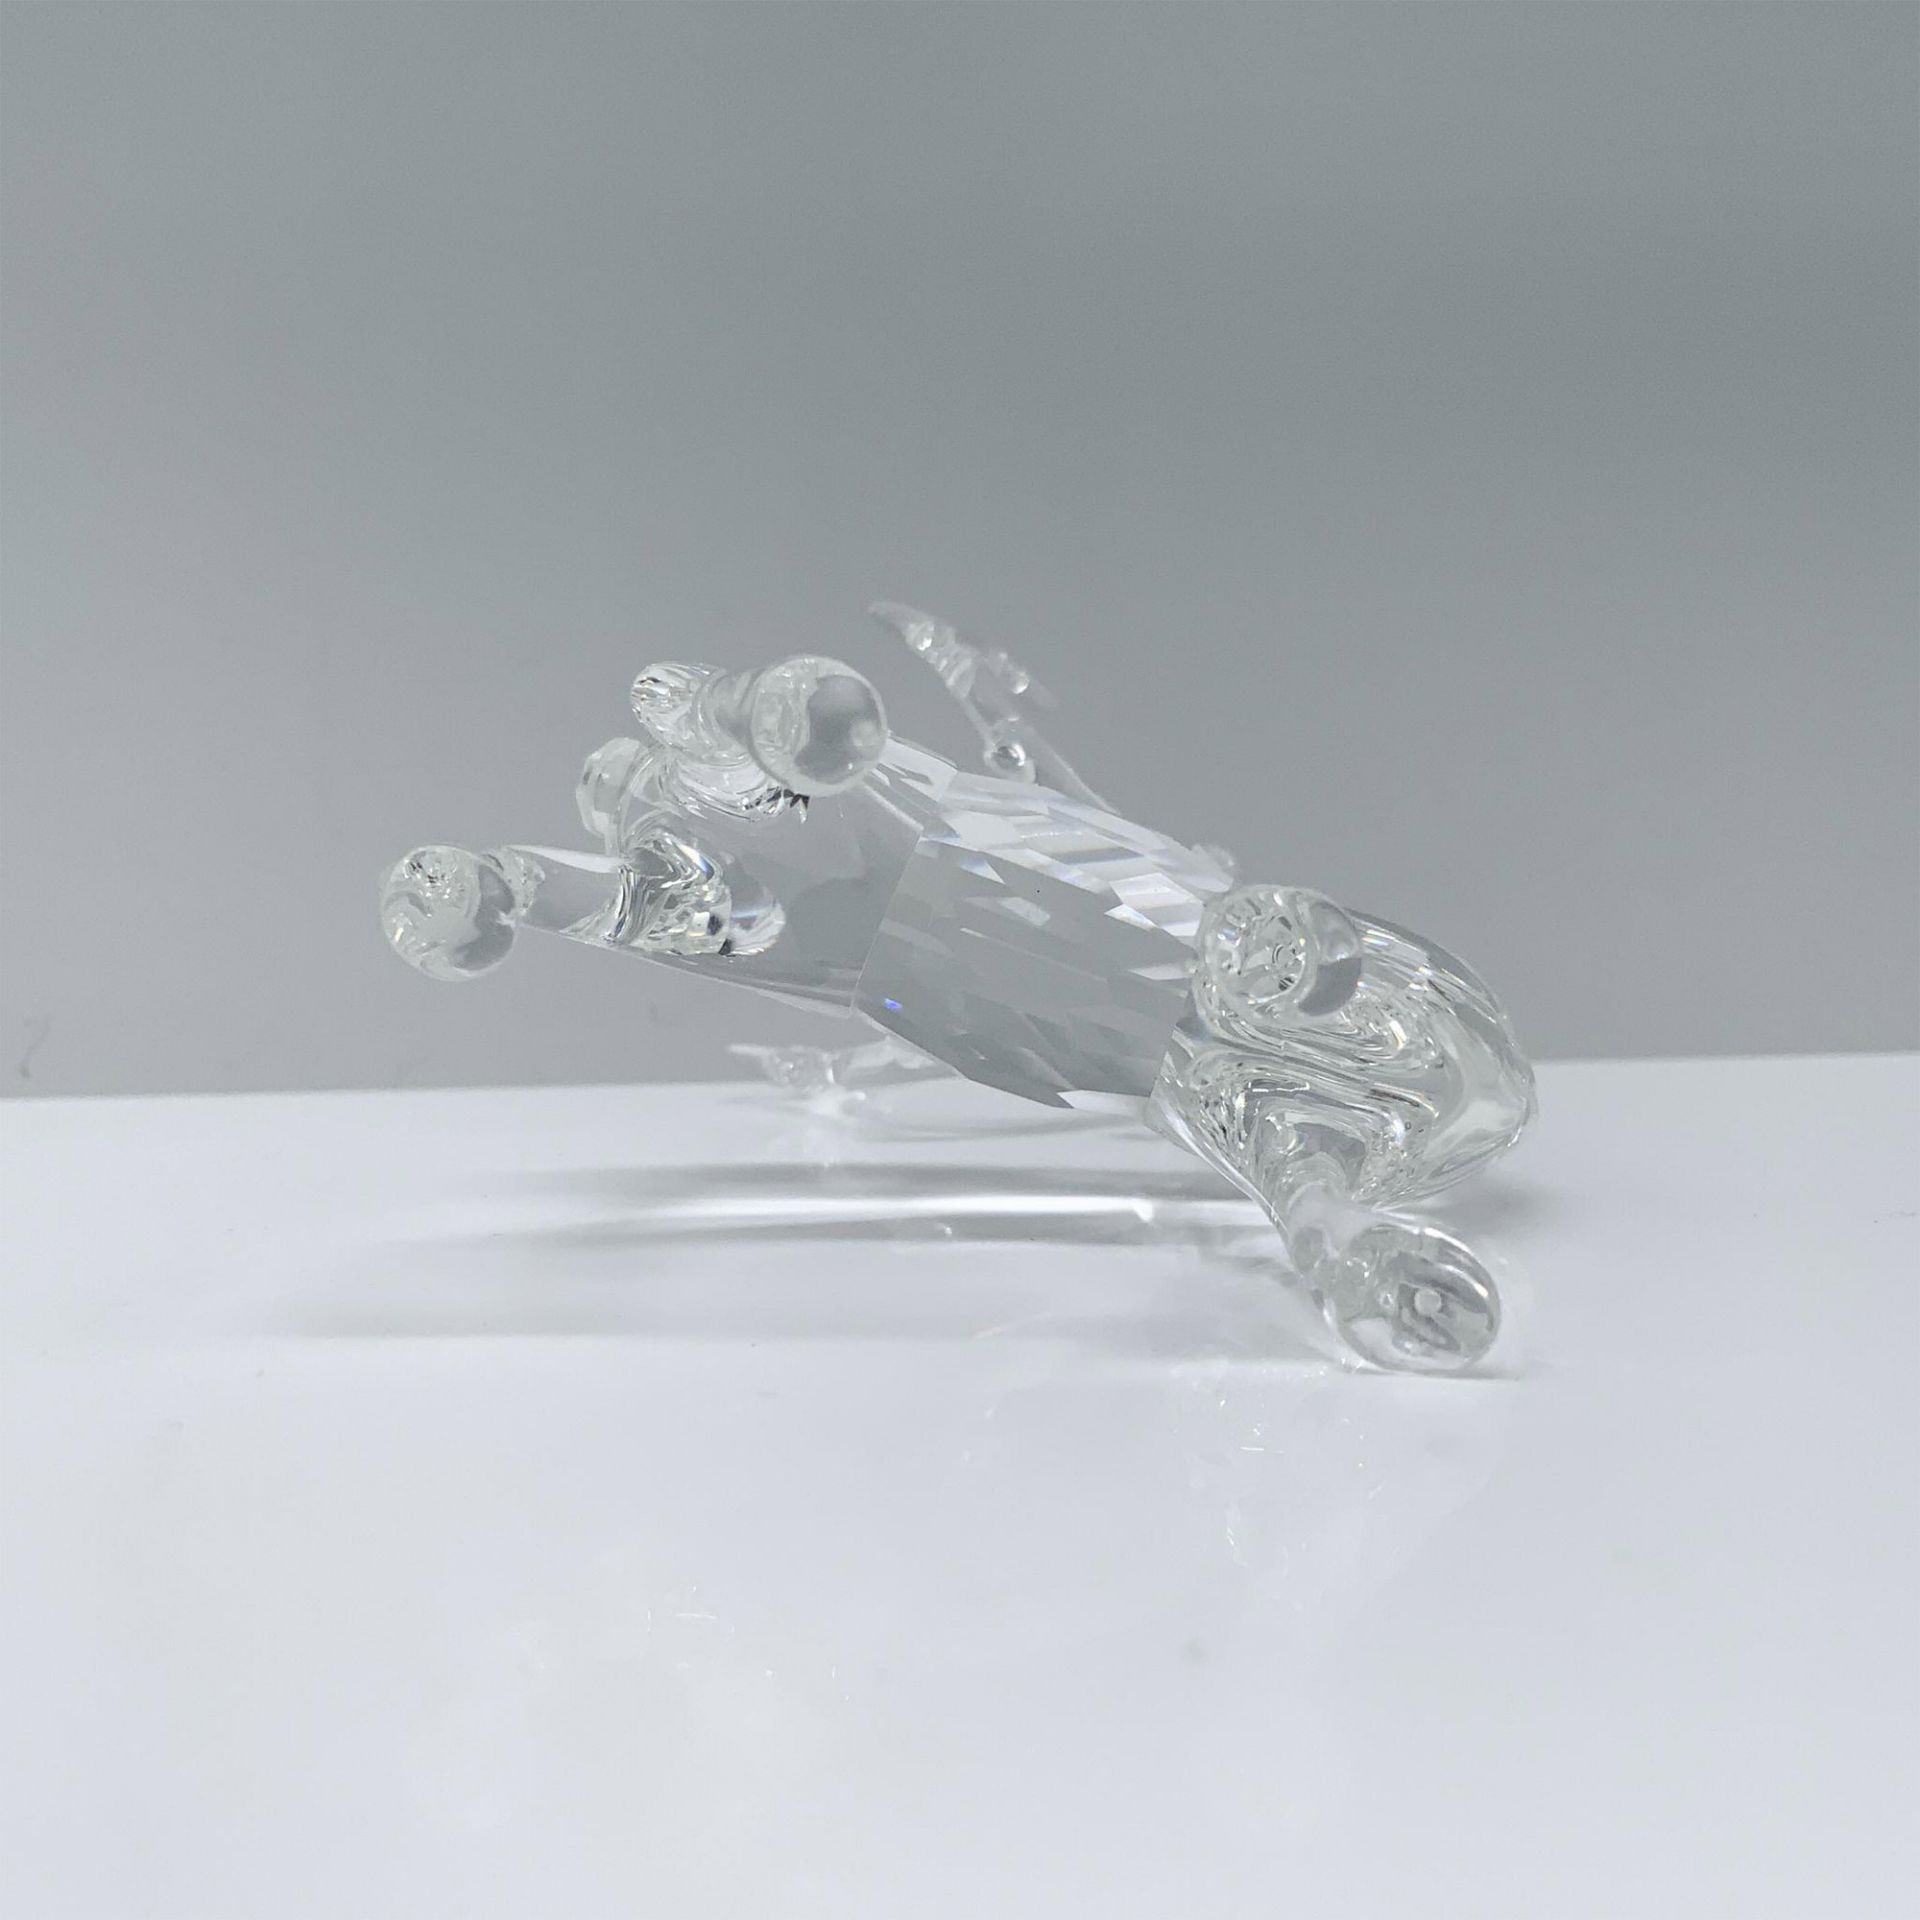 Swarovski Crystal Figurine, Reindeer 214821 - Image 3 of 4